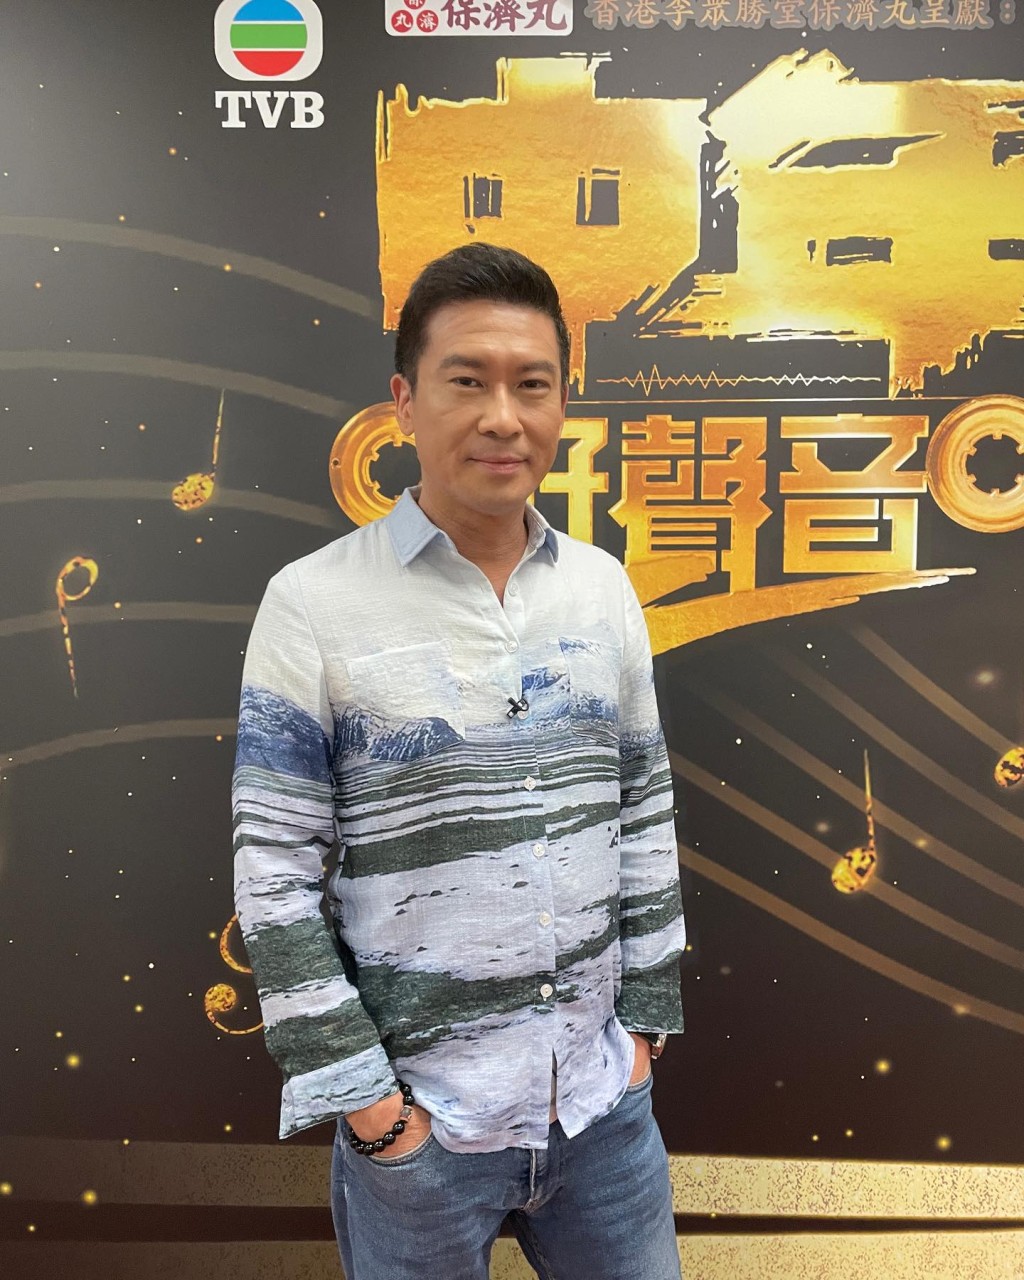  張佳添近年為TVB《中年好聲音》擔任評判再受關注。